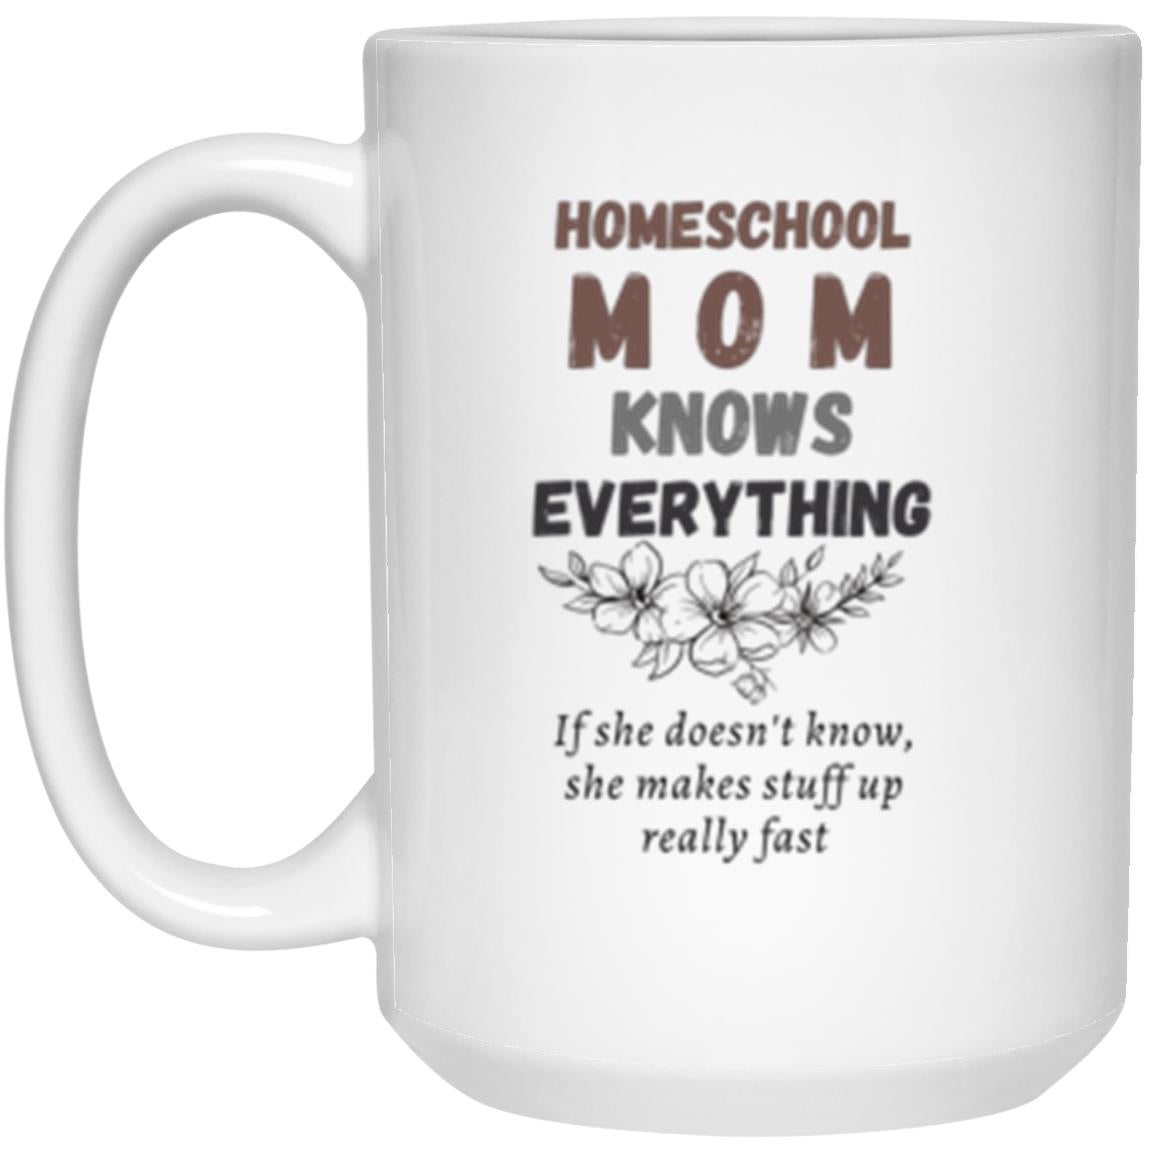 Homeschool Mom Knows Everything 15 oz. White Mug